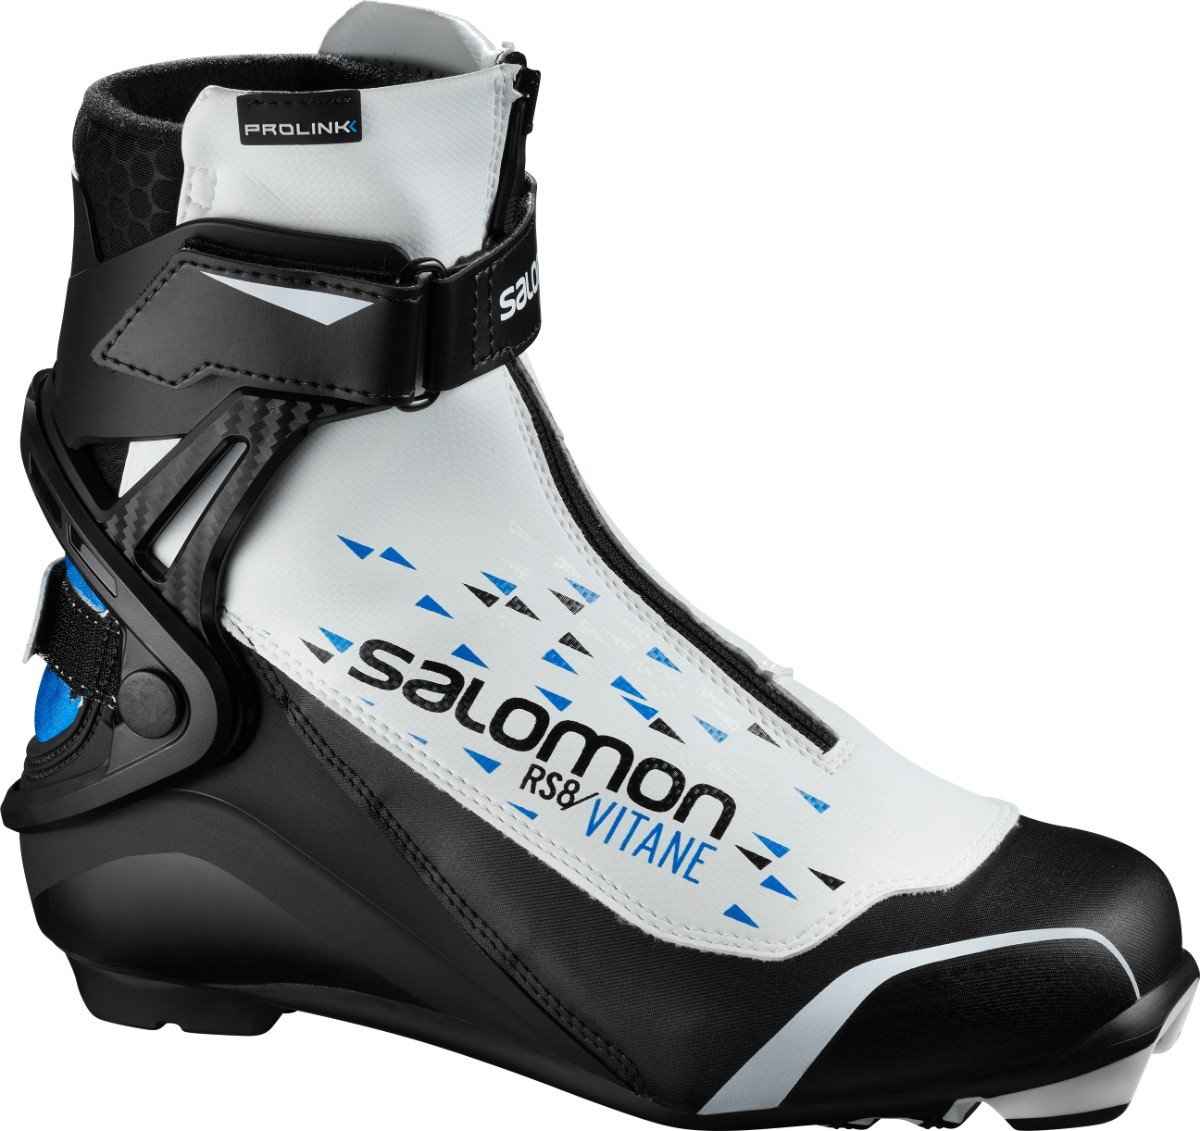 ботинки для беговых лыж женские salomon rs8 vitane prolink w 